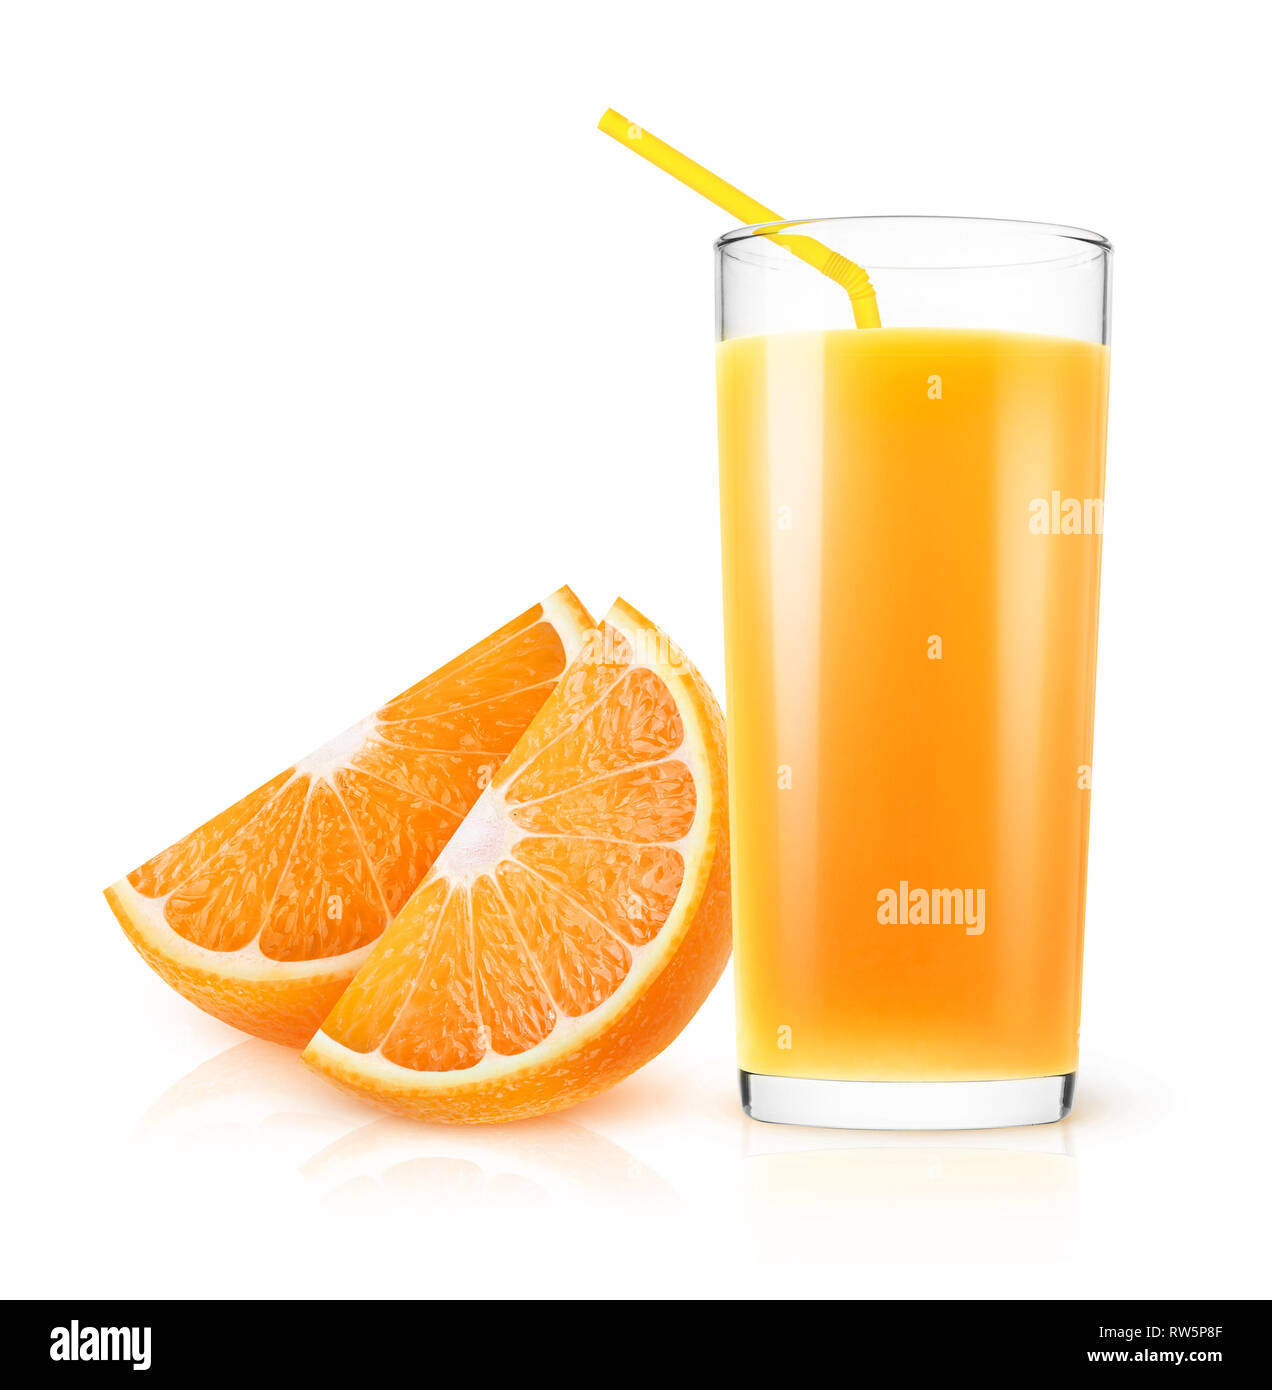 Isolé du jus d'orange. Jus d'orange dans un verre et des morceaux de fruits isolé sur fond blanc avec clipping path Banque D'Images